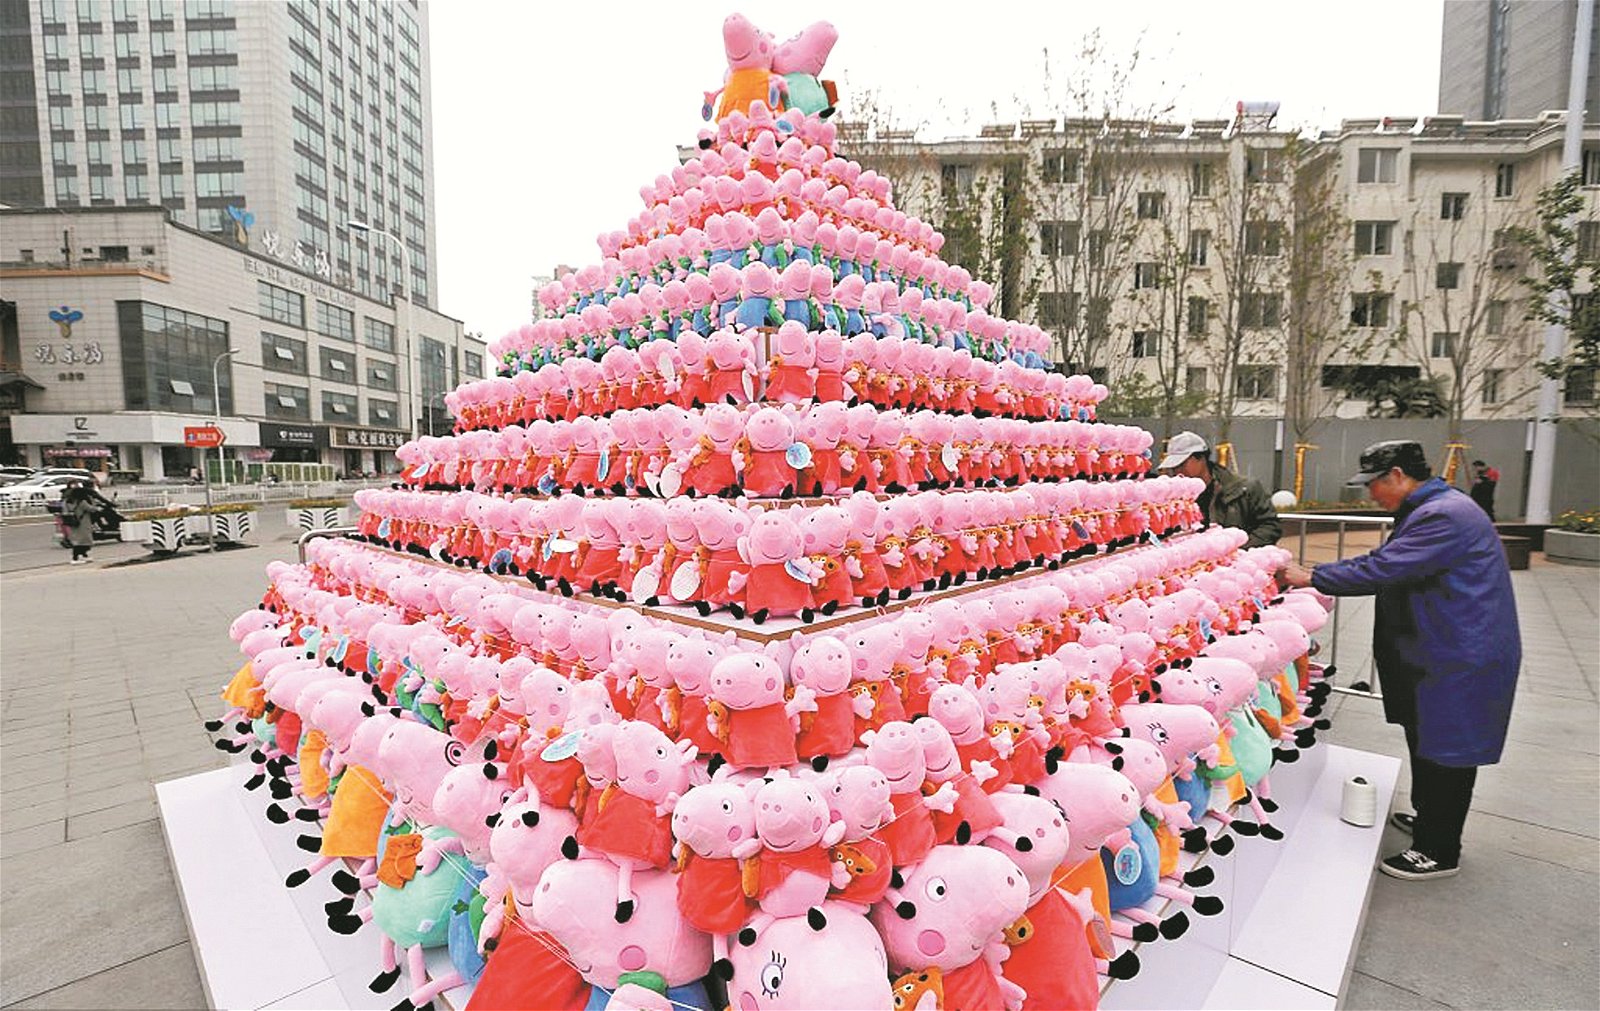 一名位于江苏淮安的商家正进行著促销活动，商家在闹市区中奖数百个“小猪佩奇”的绒毛娃娃叠放成金字塔的形状，十分引人注目，夺人眼球。